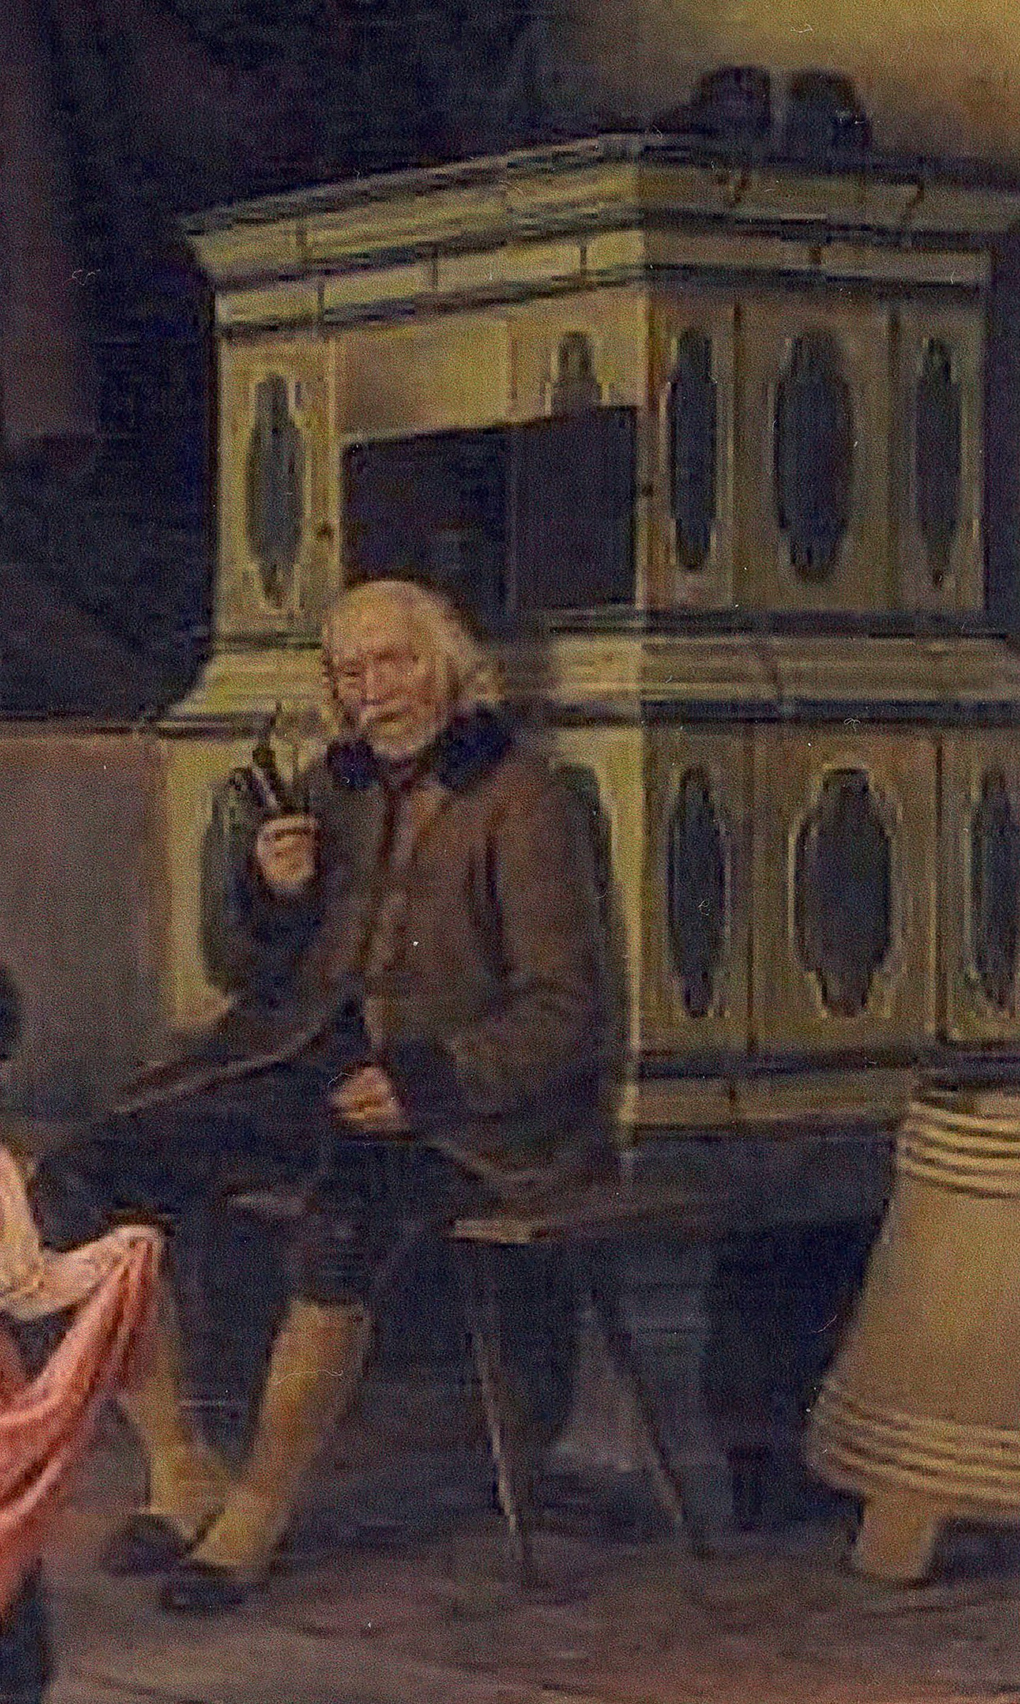 Dziadek przygląda się rodzinnym tańcom, 1845, olej na płótnie, fragment obrazu Tyrolska scena rodzinna, Muzeum Narodowe w Szczecinie